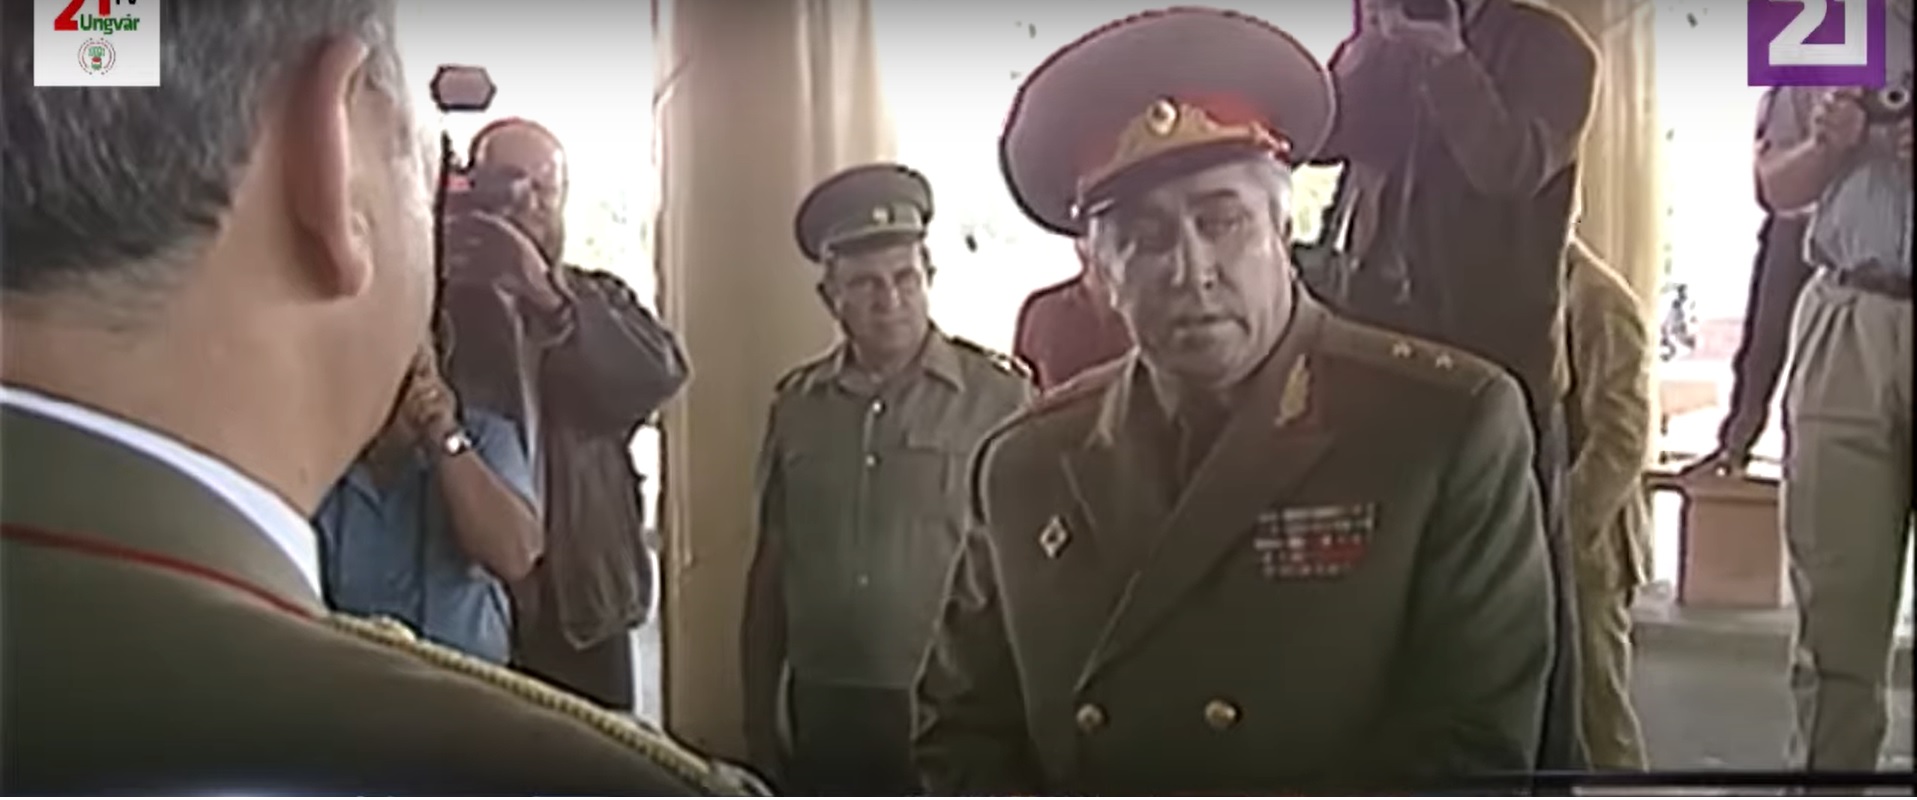 Viktor Silov altábornagy elhagyja Magyarországot 1991. június 19-én